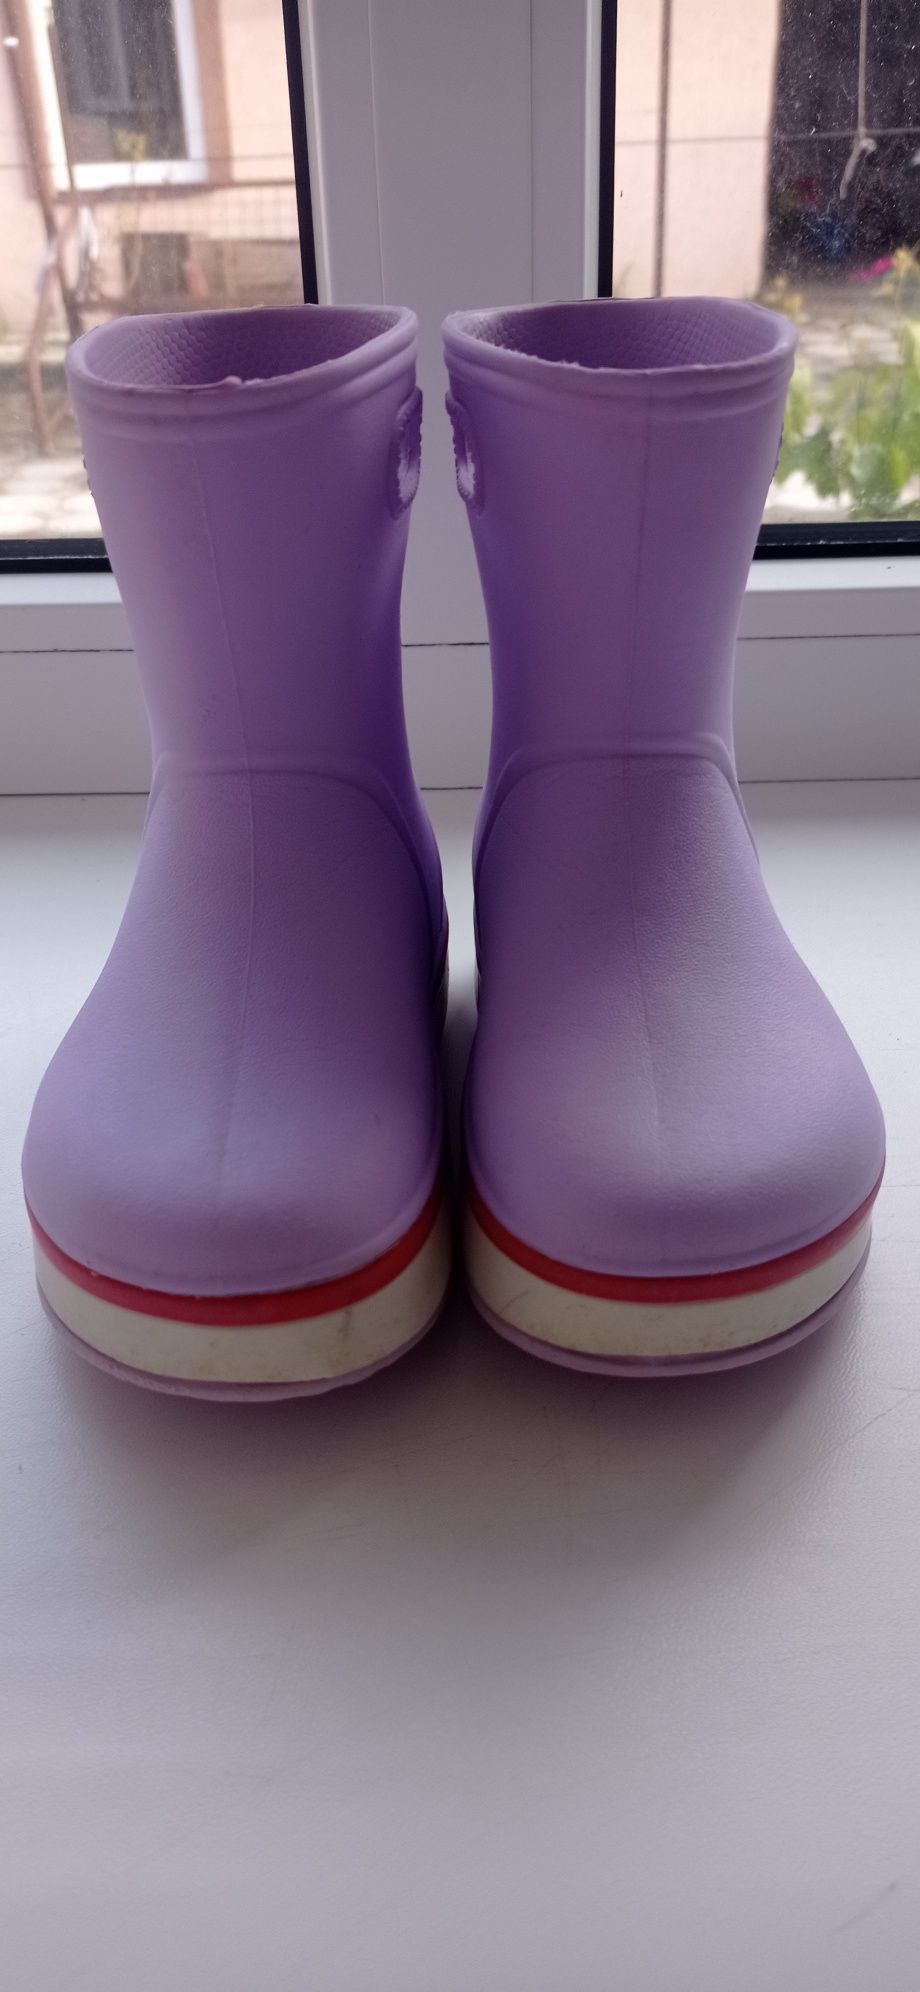 Гумові чобітки з теплими шкарпетками. Устілка 15,5 см